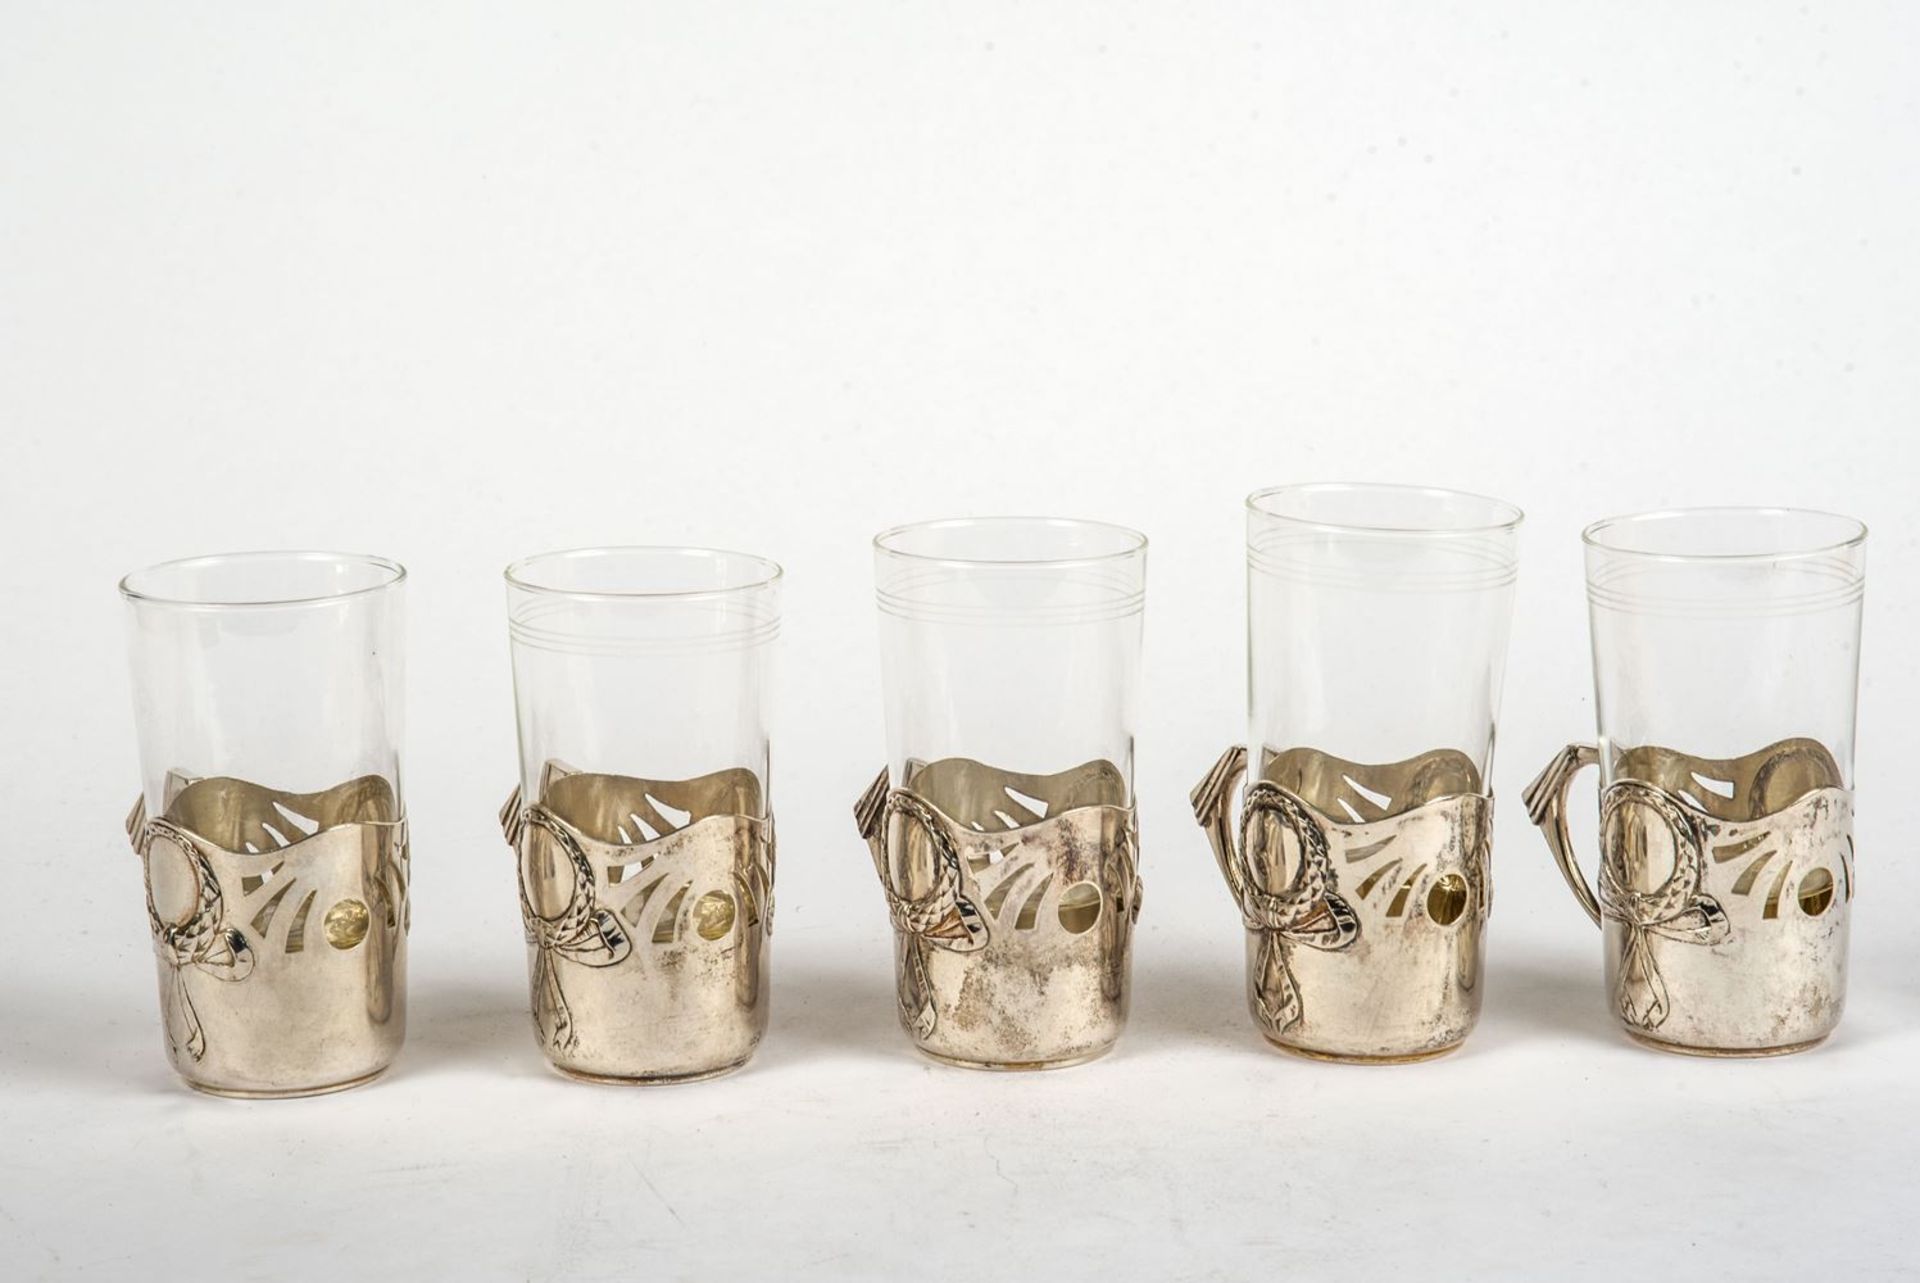 5 Teeglashalter, Wien 19 Jh.800 er Silber. Runder zylindrischer Korpus, beidseitig durchbrochen